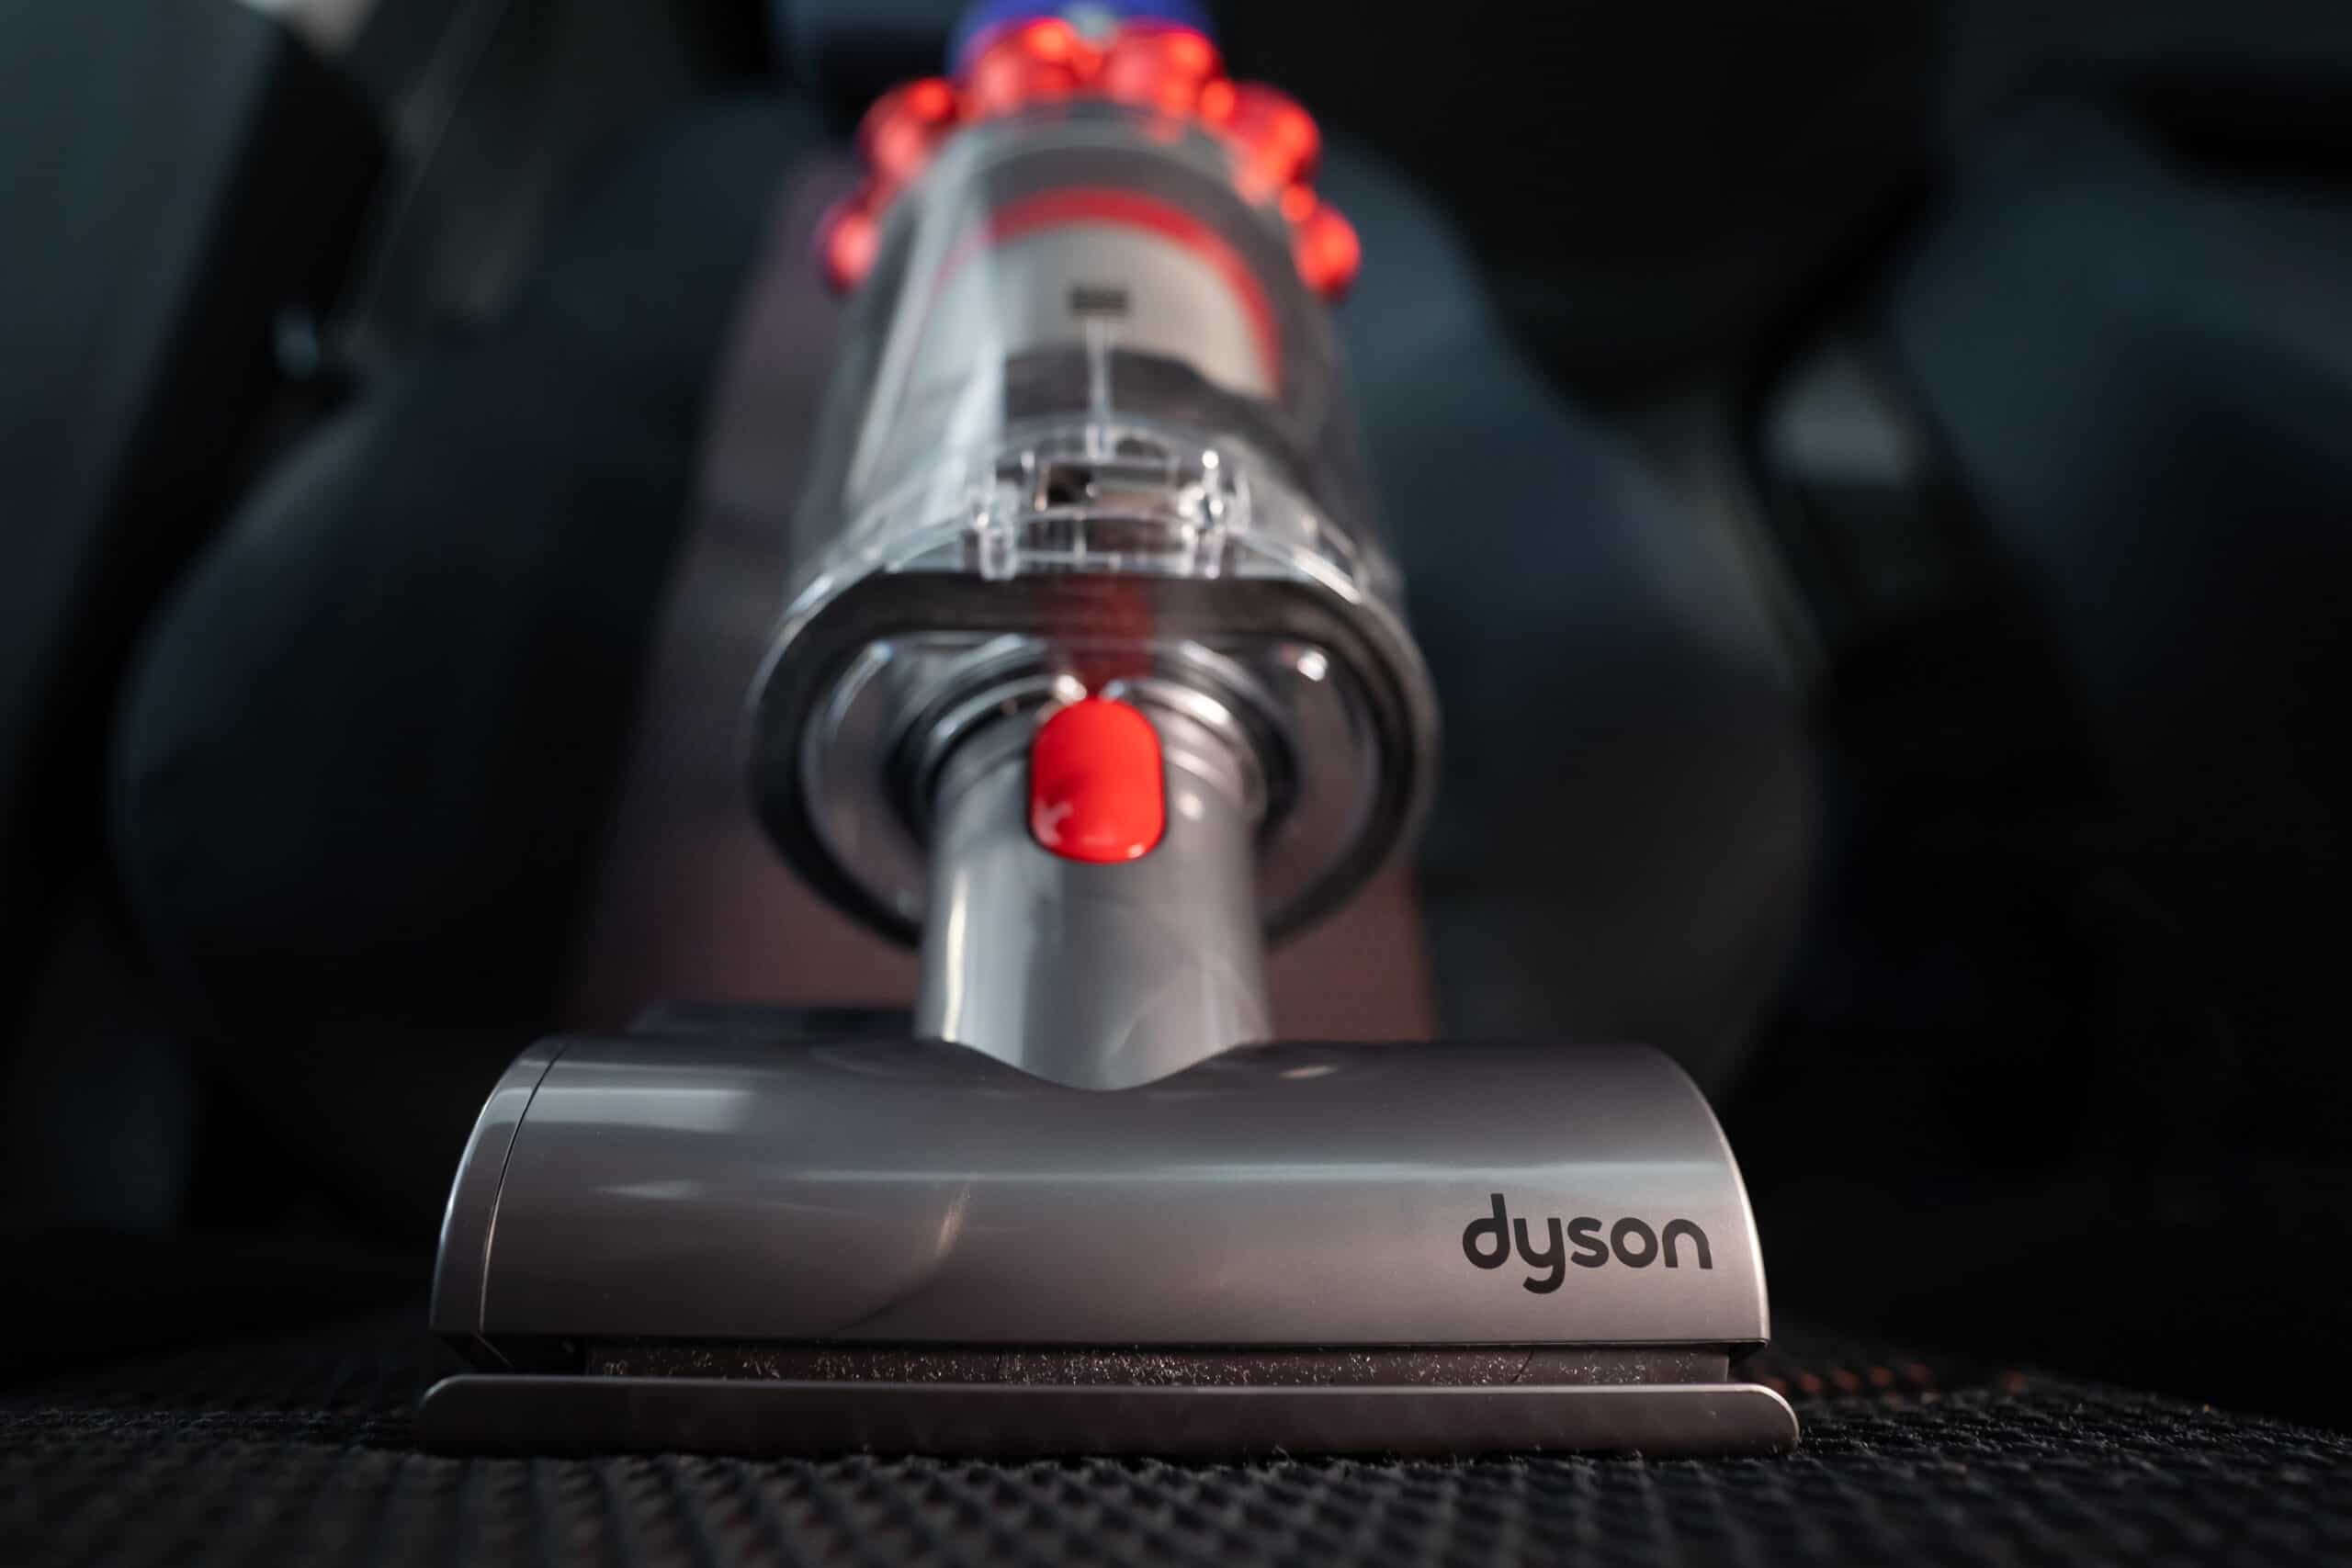 best dyson vacuums